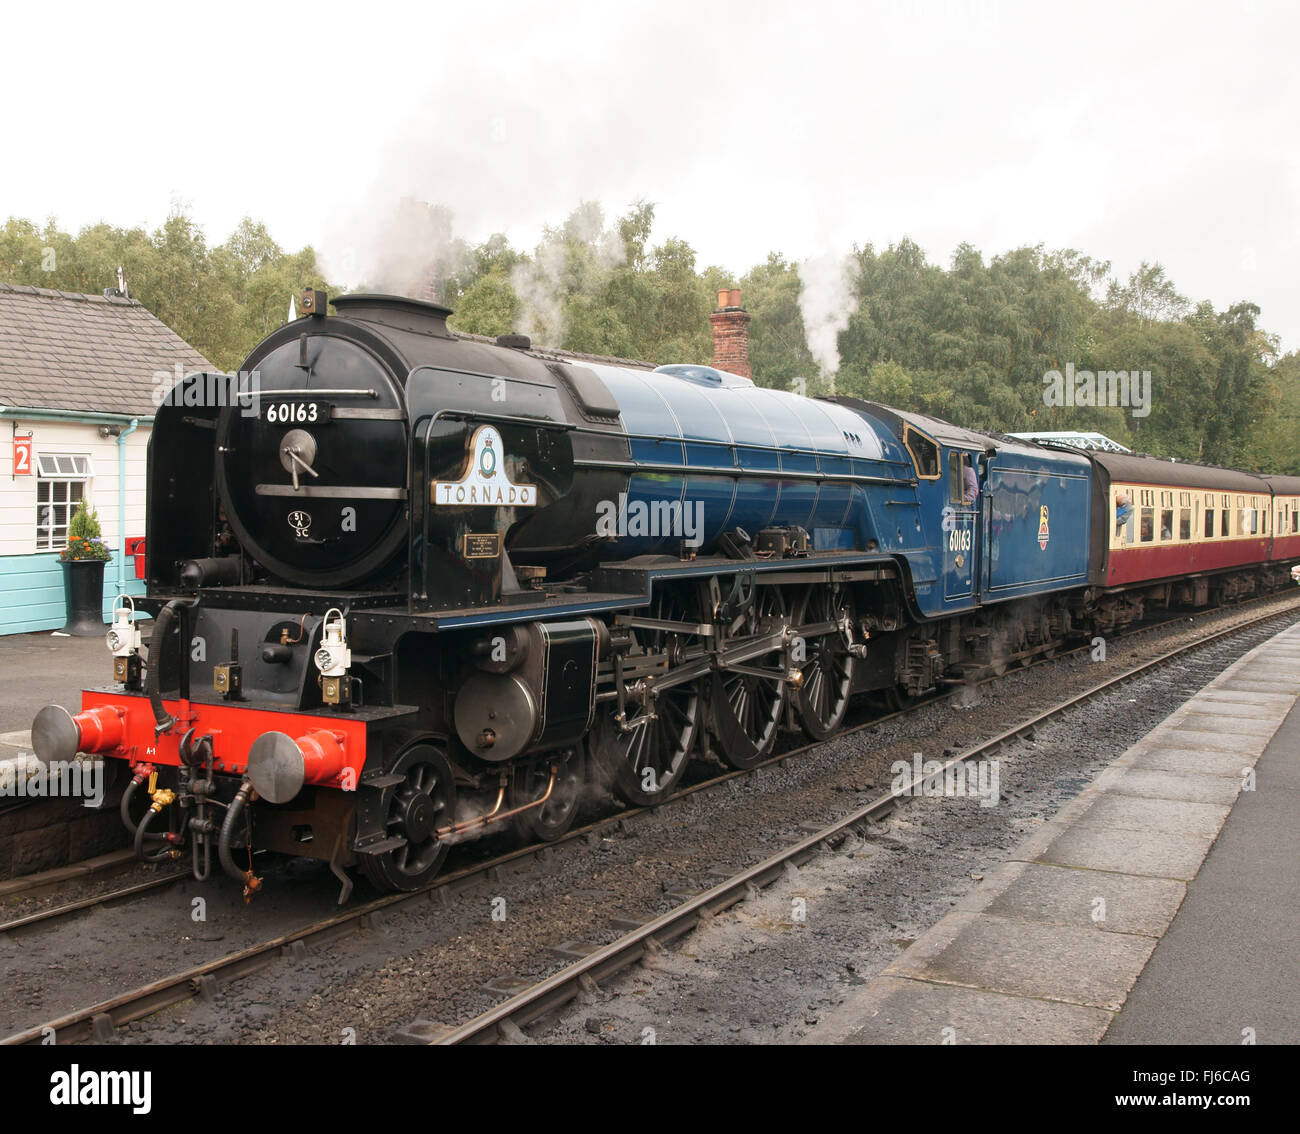 Tornado-Dampflokomotive BR blue bei Grosmont Bahnsteig auf North York Moors  Railway, Dreiviertelansicht Stockfotografie - Alamy